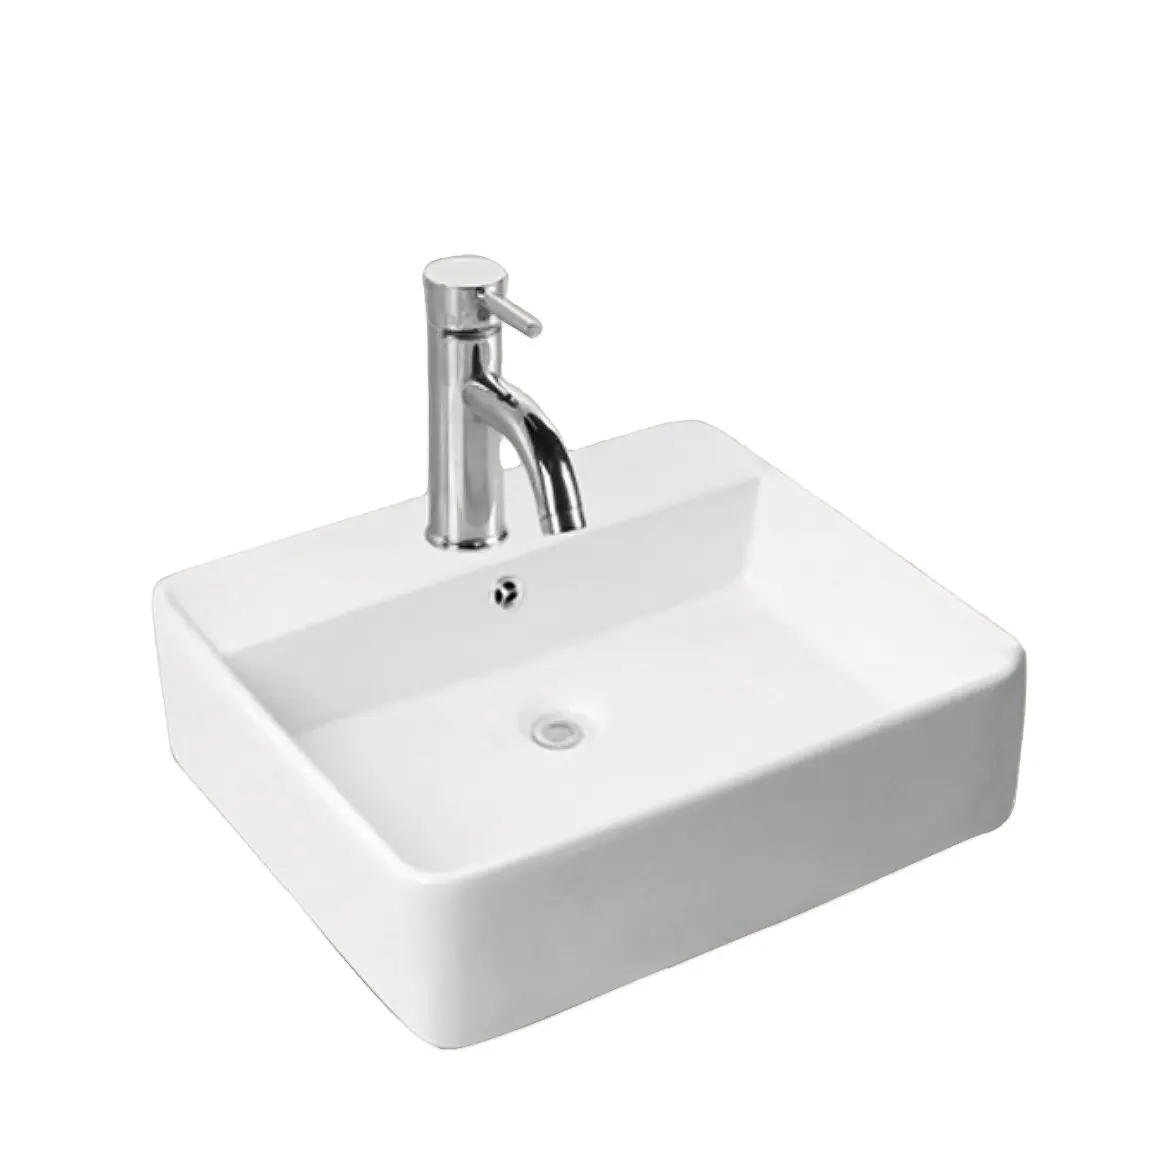 Banyo tasarım Modern yüksek kaliteli beyaz üstü sayaç ucuz seramik fantezi banyo lavaboları